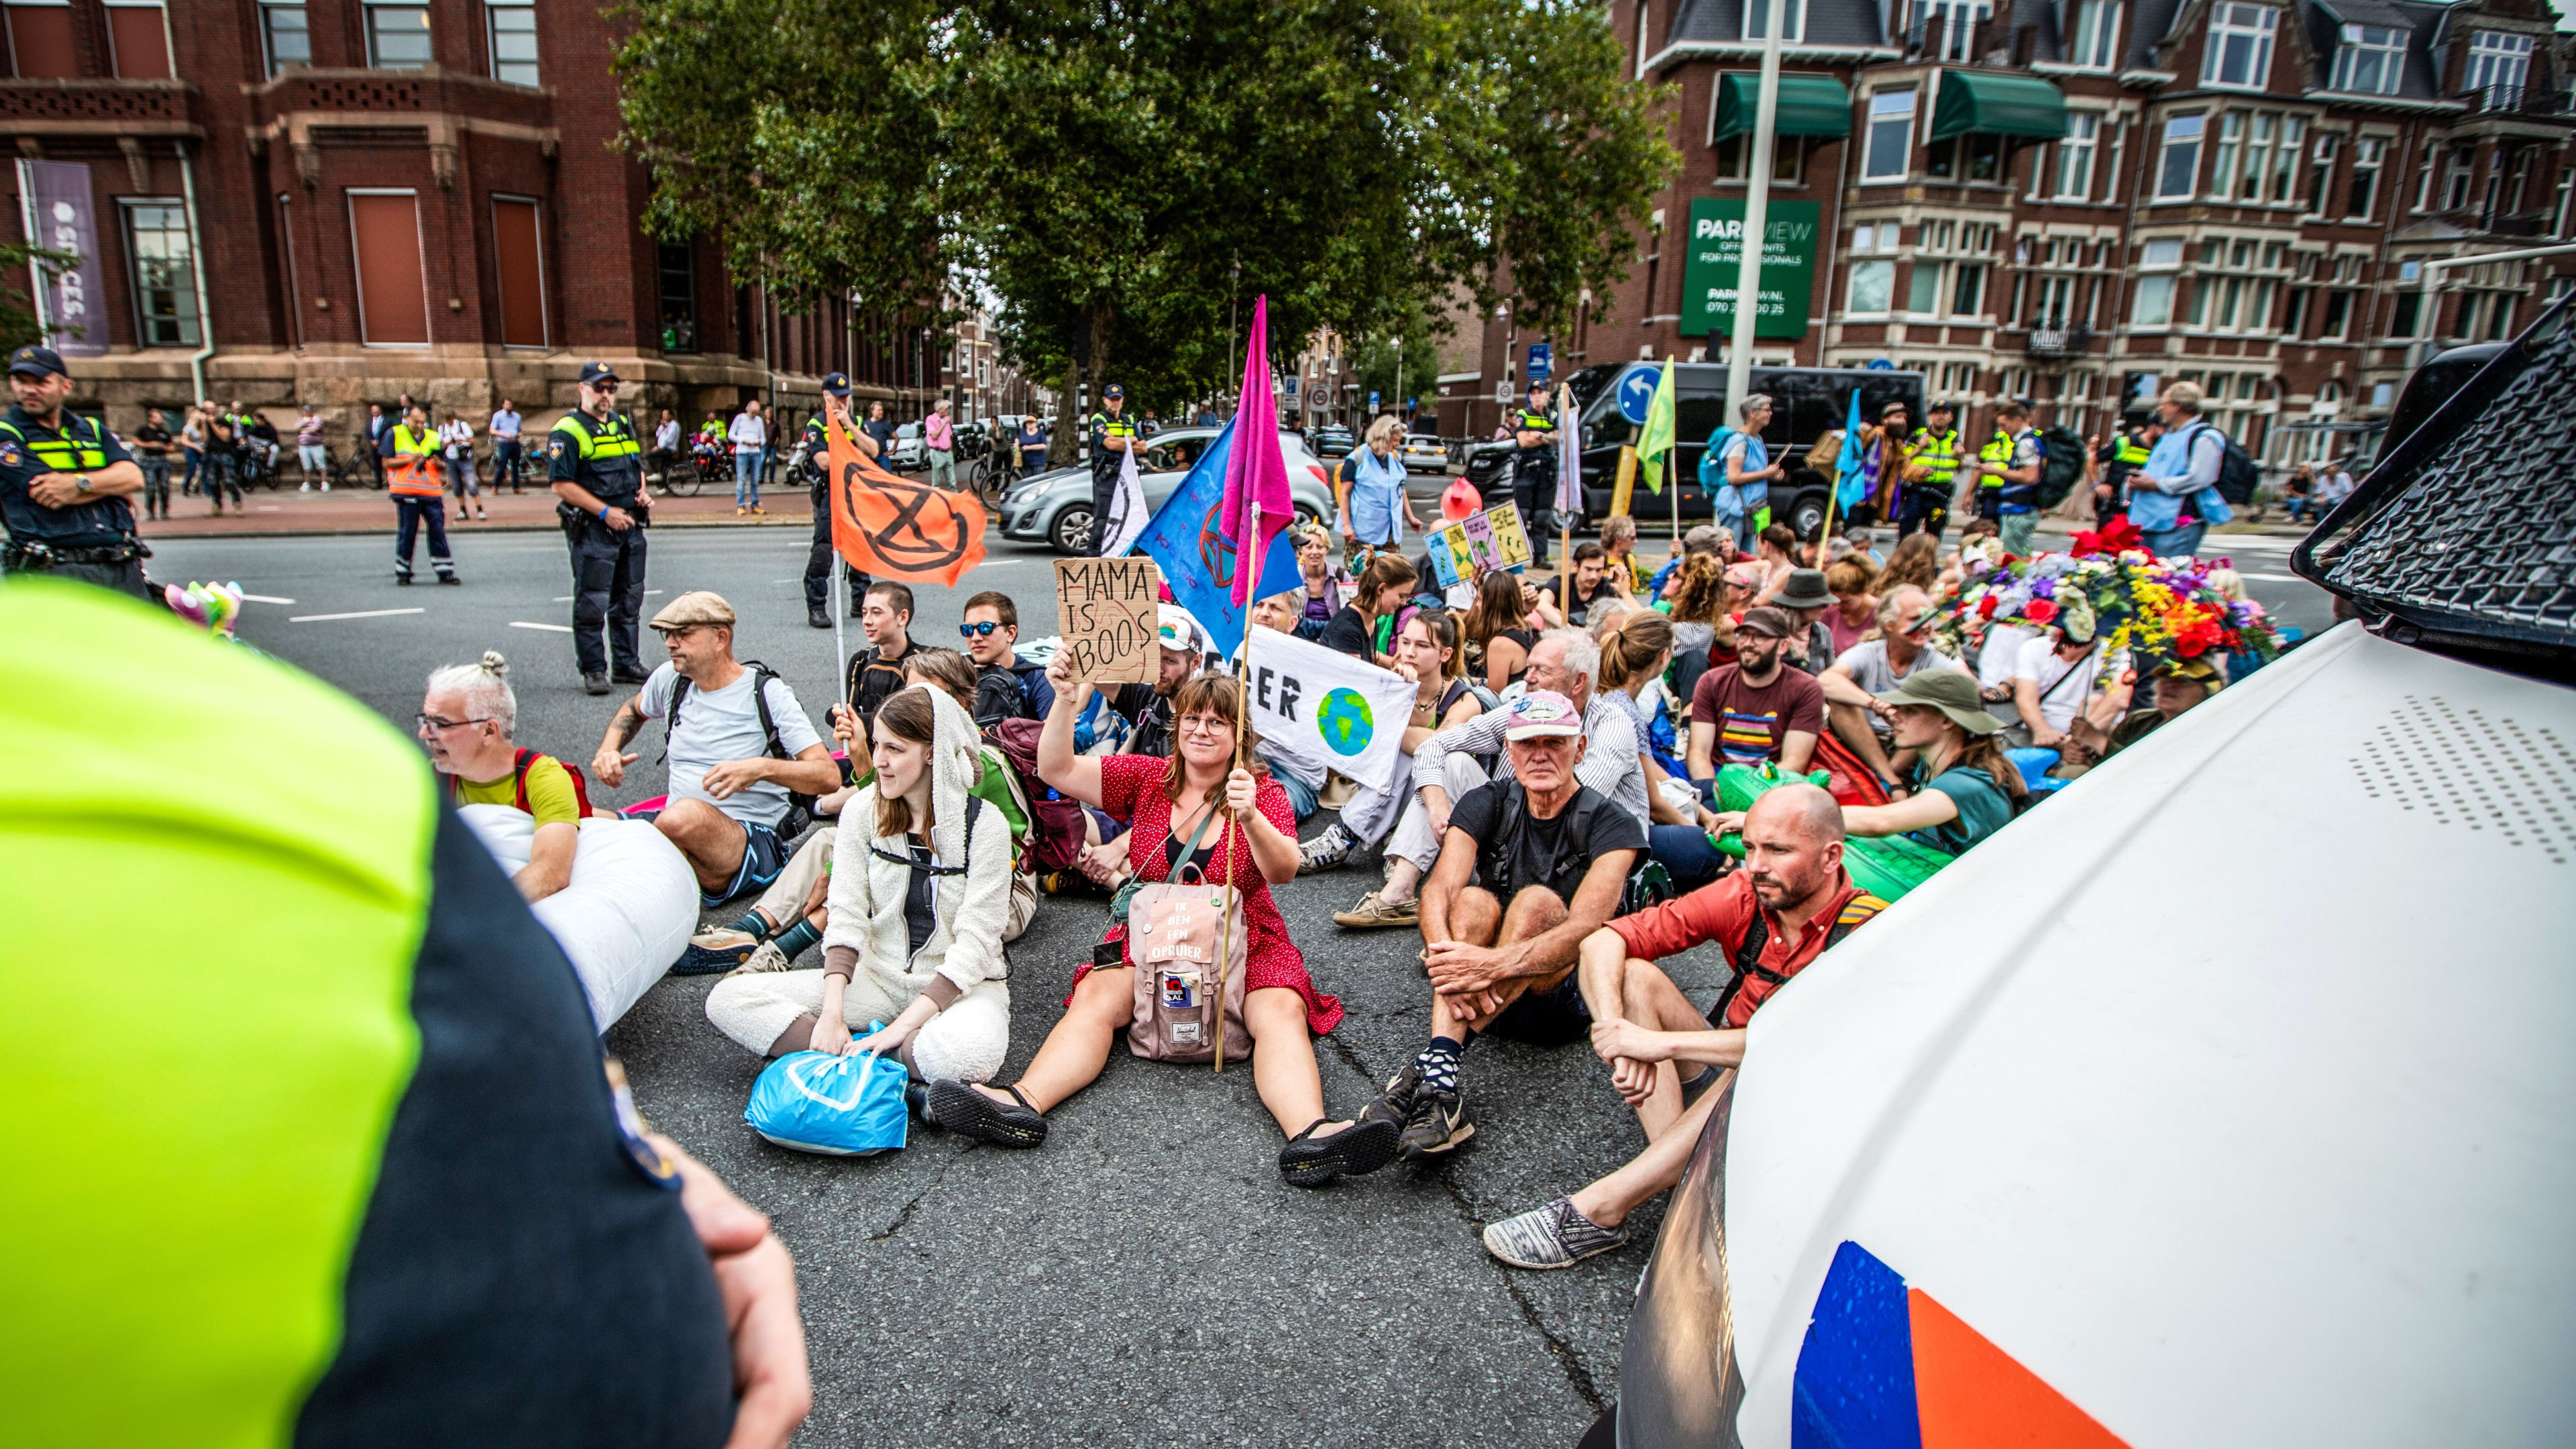 Klimaatdemonstranten blokkeren kruispunt Den Haag, boze automobilist opgepakt